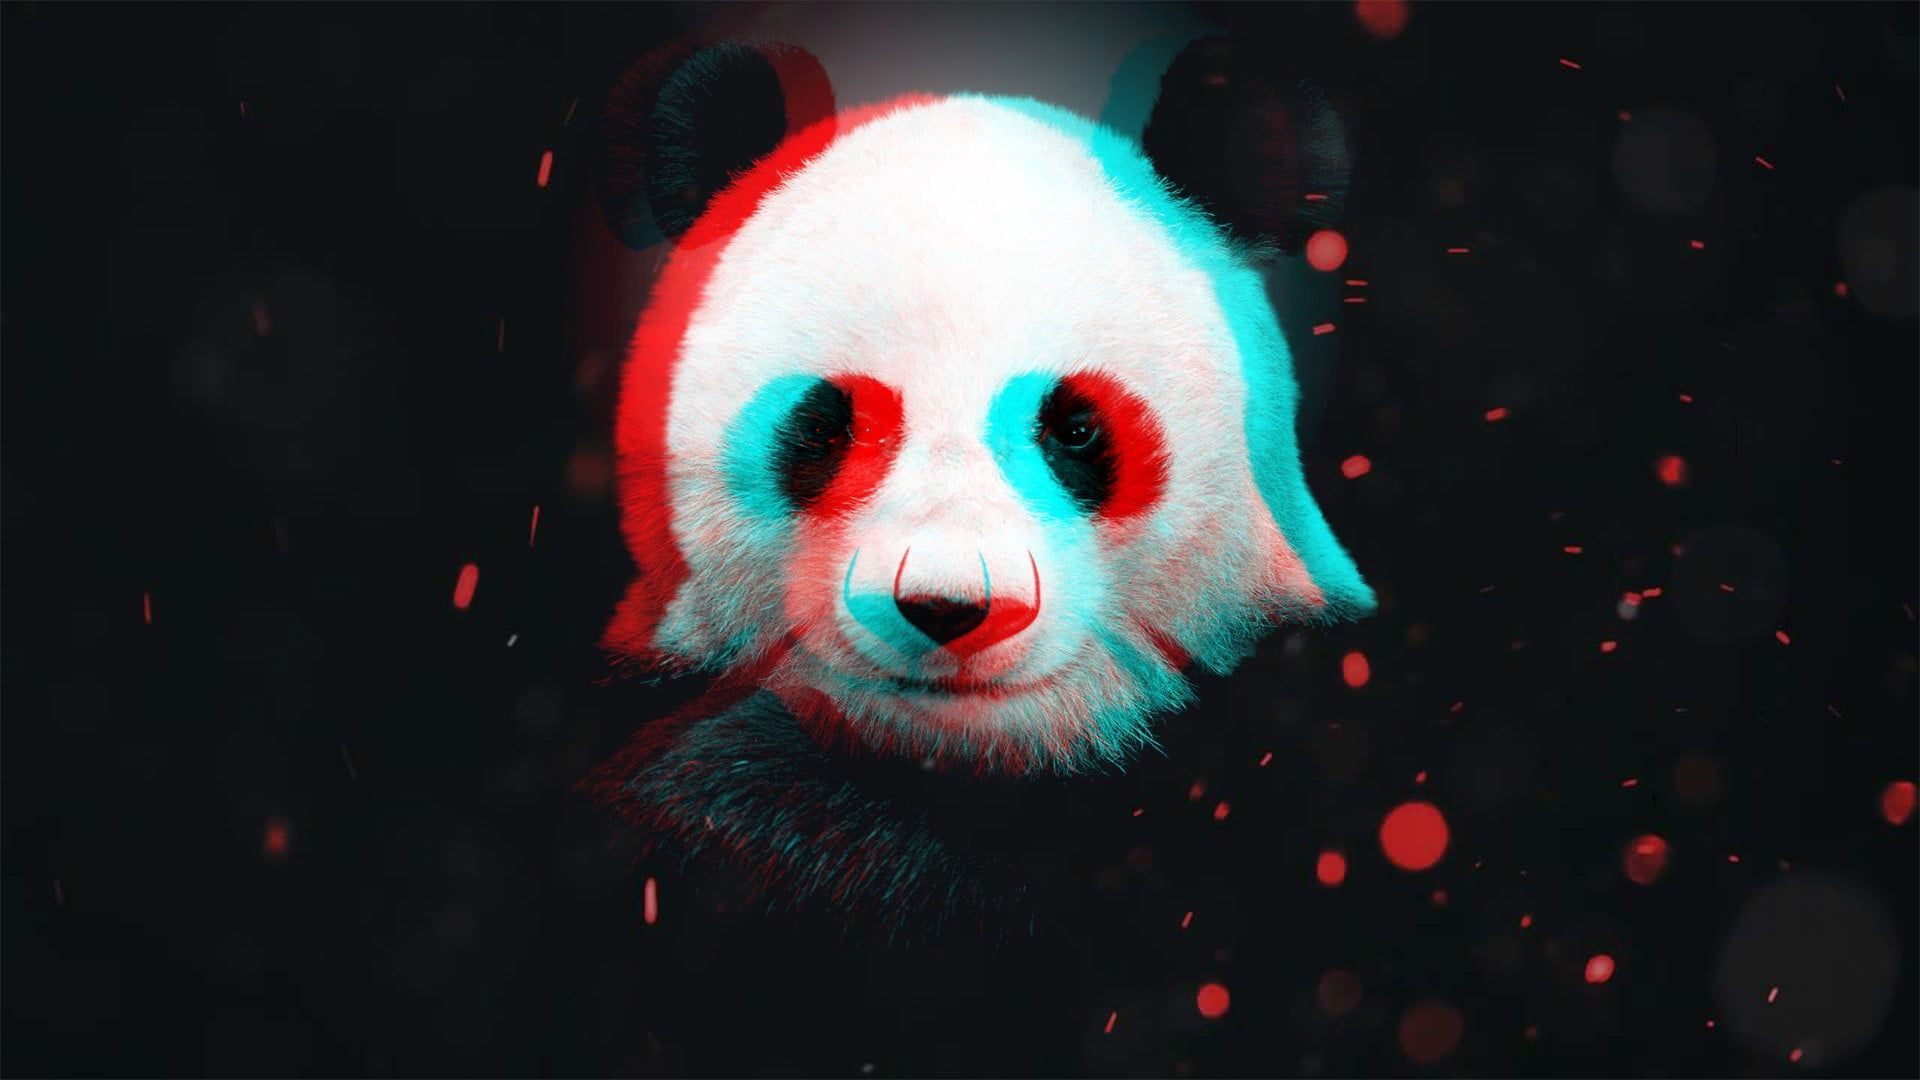 white and black panda wallpaper #panda D #particle P #wallpaper #hdwallpaper #desktop. Panda wallpaper, Panda art, R wallpaper